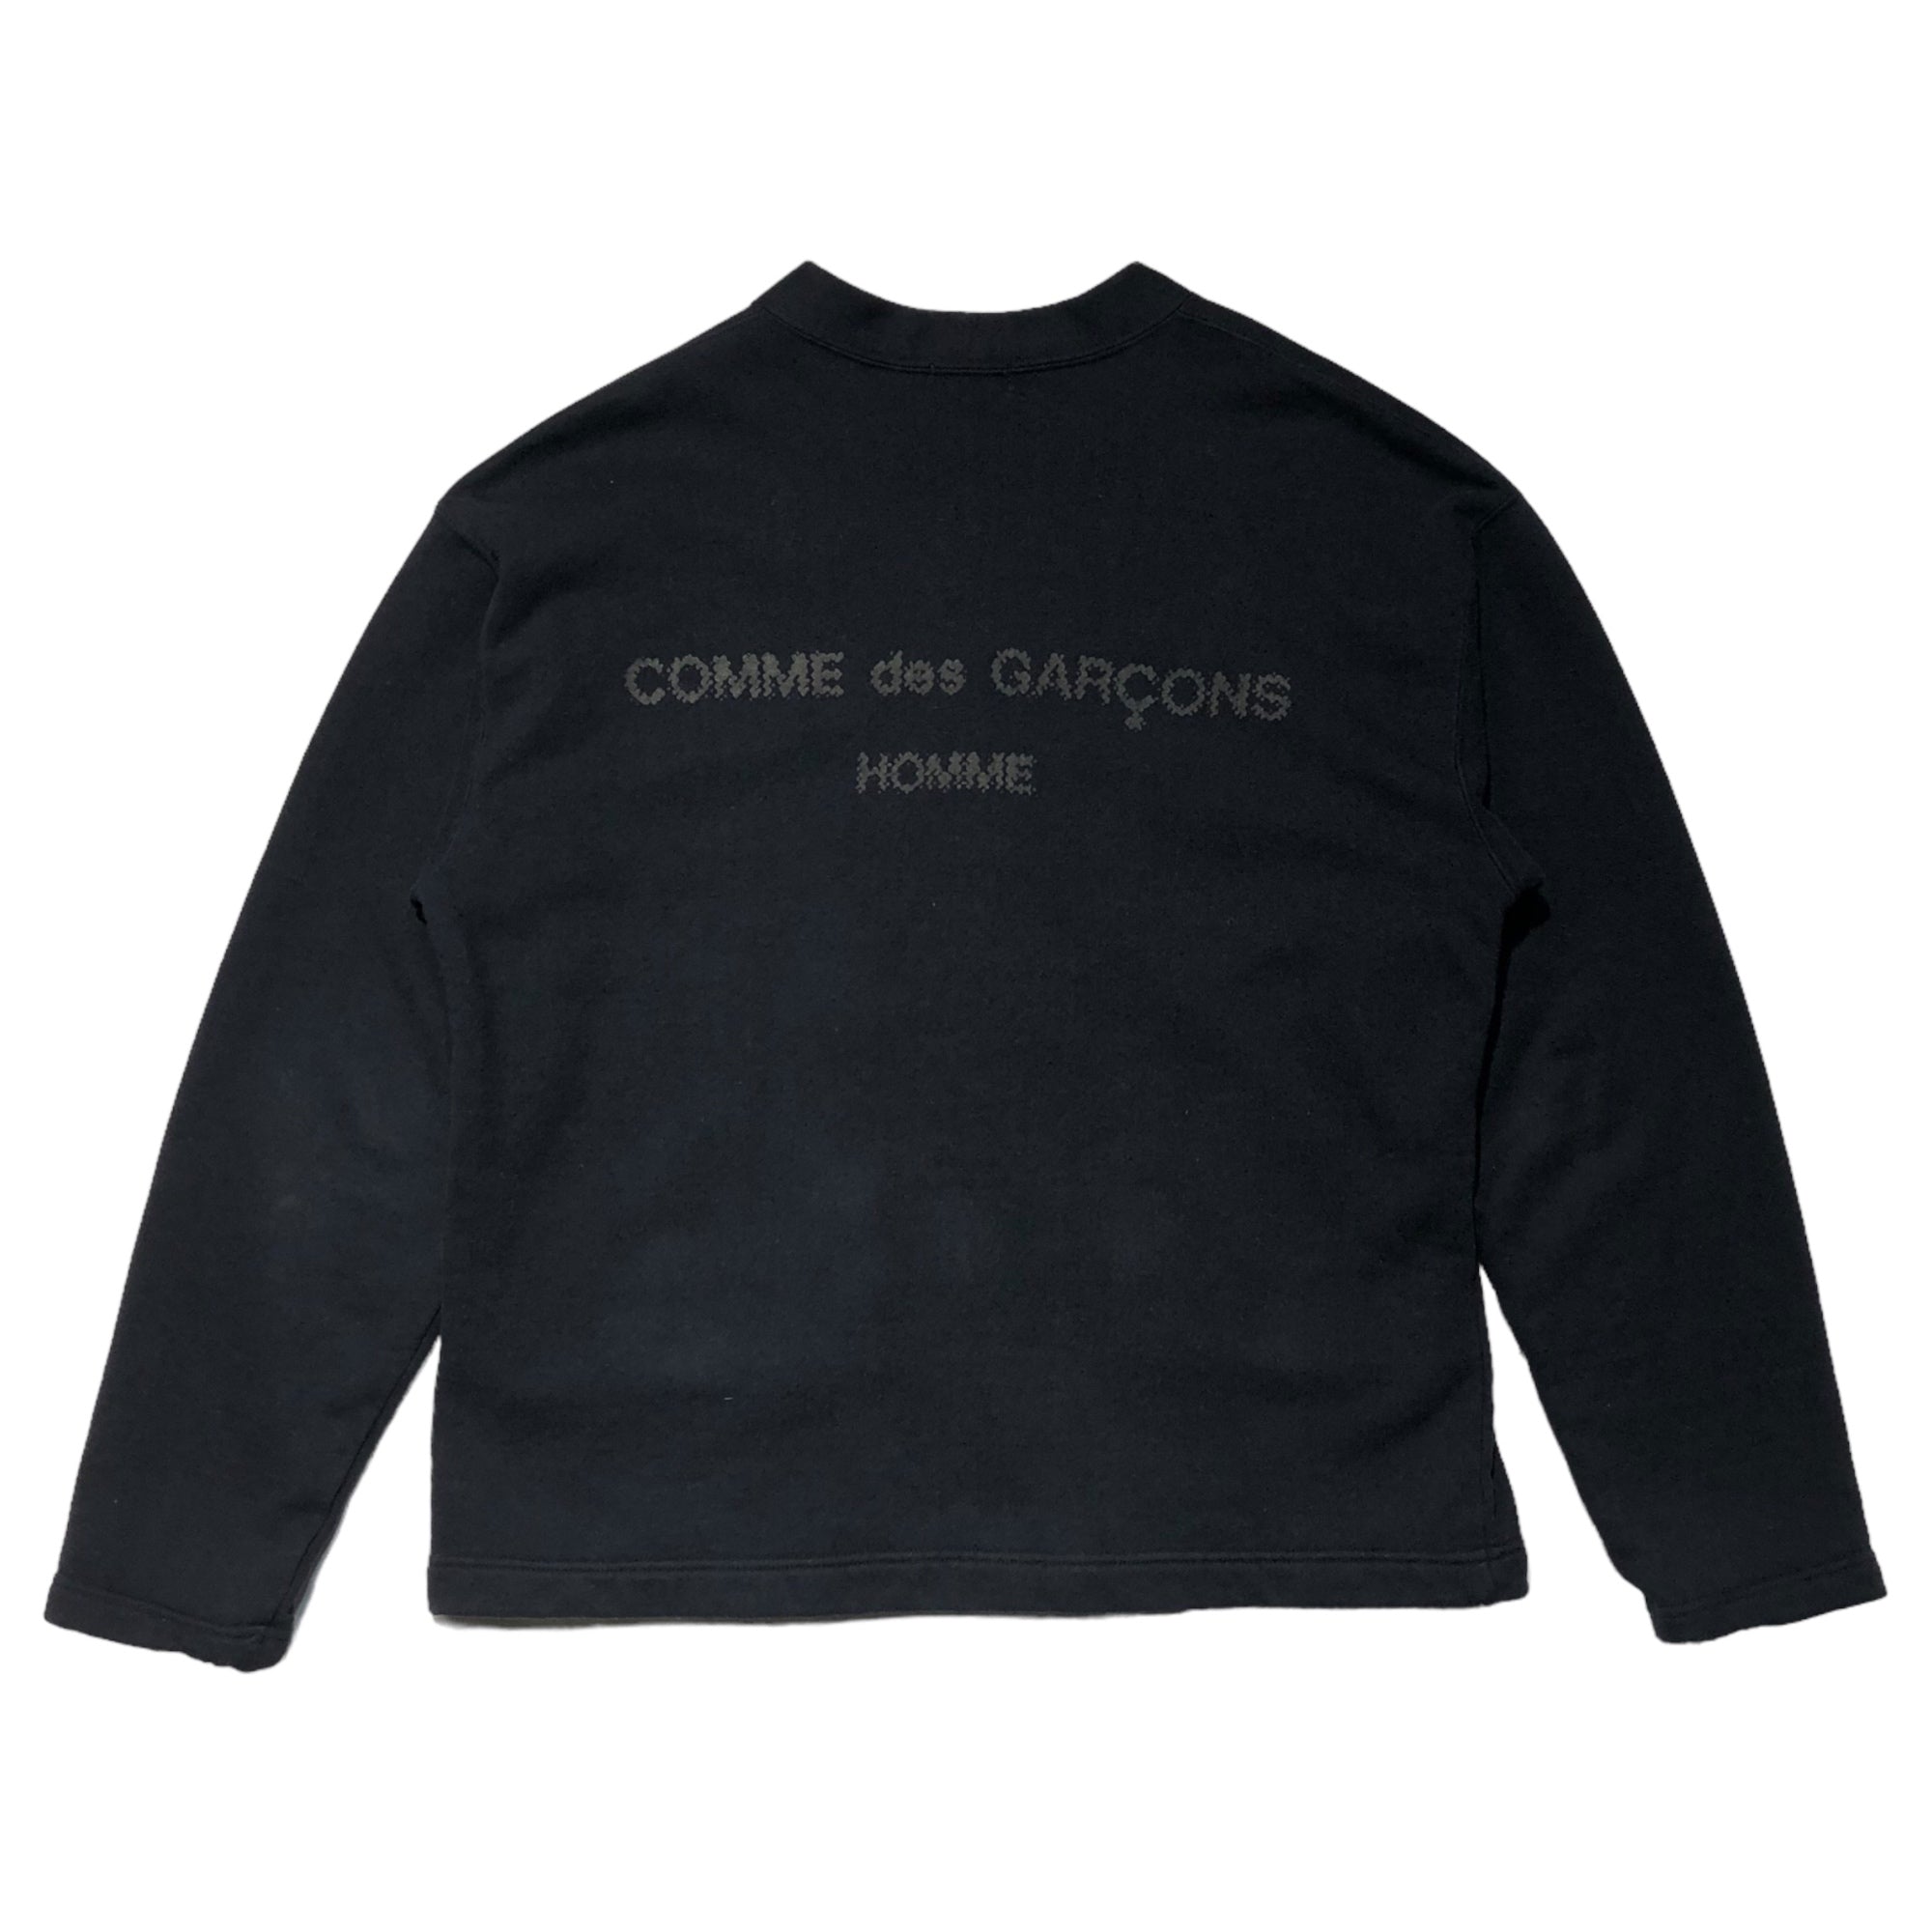 COMME des GARCONS HOMME(コムデギャルソンオム) 90's back logo sweat cardigan バックロゴ スウェット カーディガン 田中オム HT-080250 表記無し(FREE) ブラック AD1991 初期ロゴ 稀少品